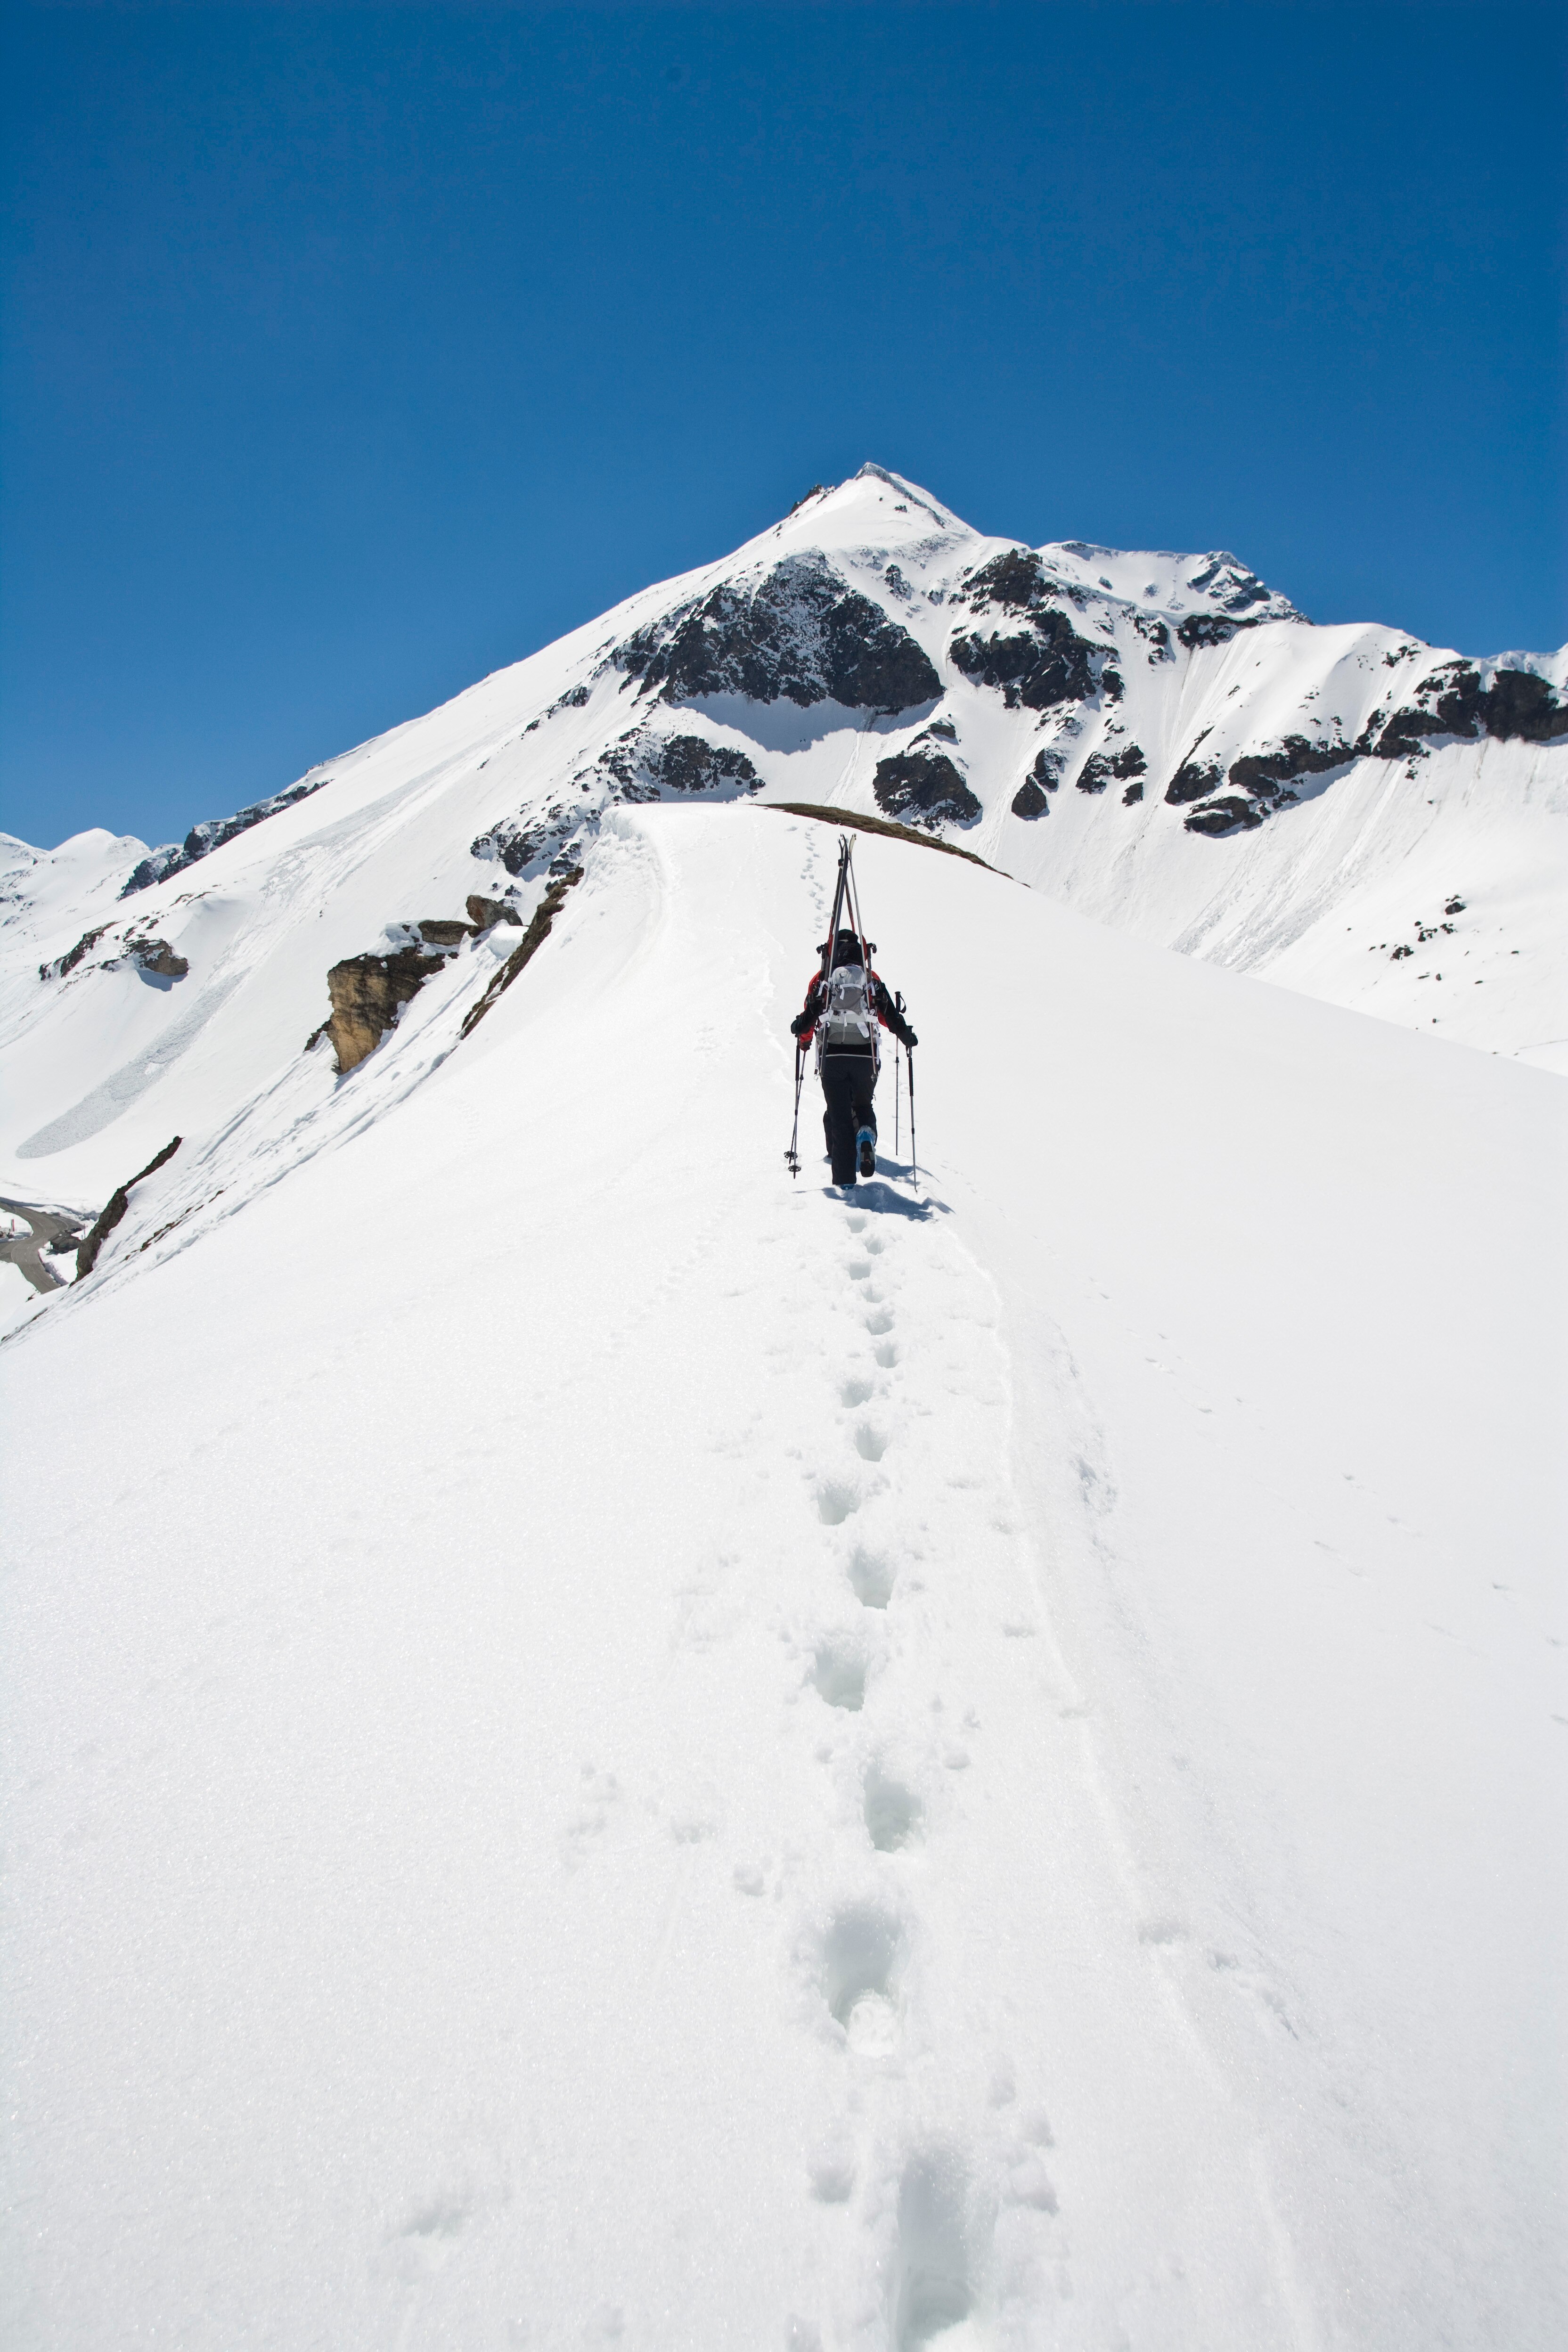 Gratwanderung am Großglockner: Skibergsteigen verlangt oft den kompletten Alpinisten, die Ski dienen als Hilfe beim Zustieg und Abfahrt.